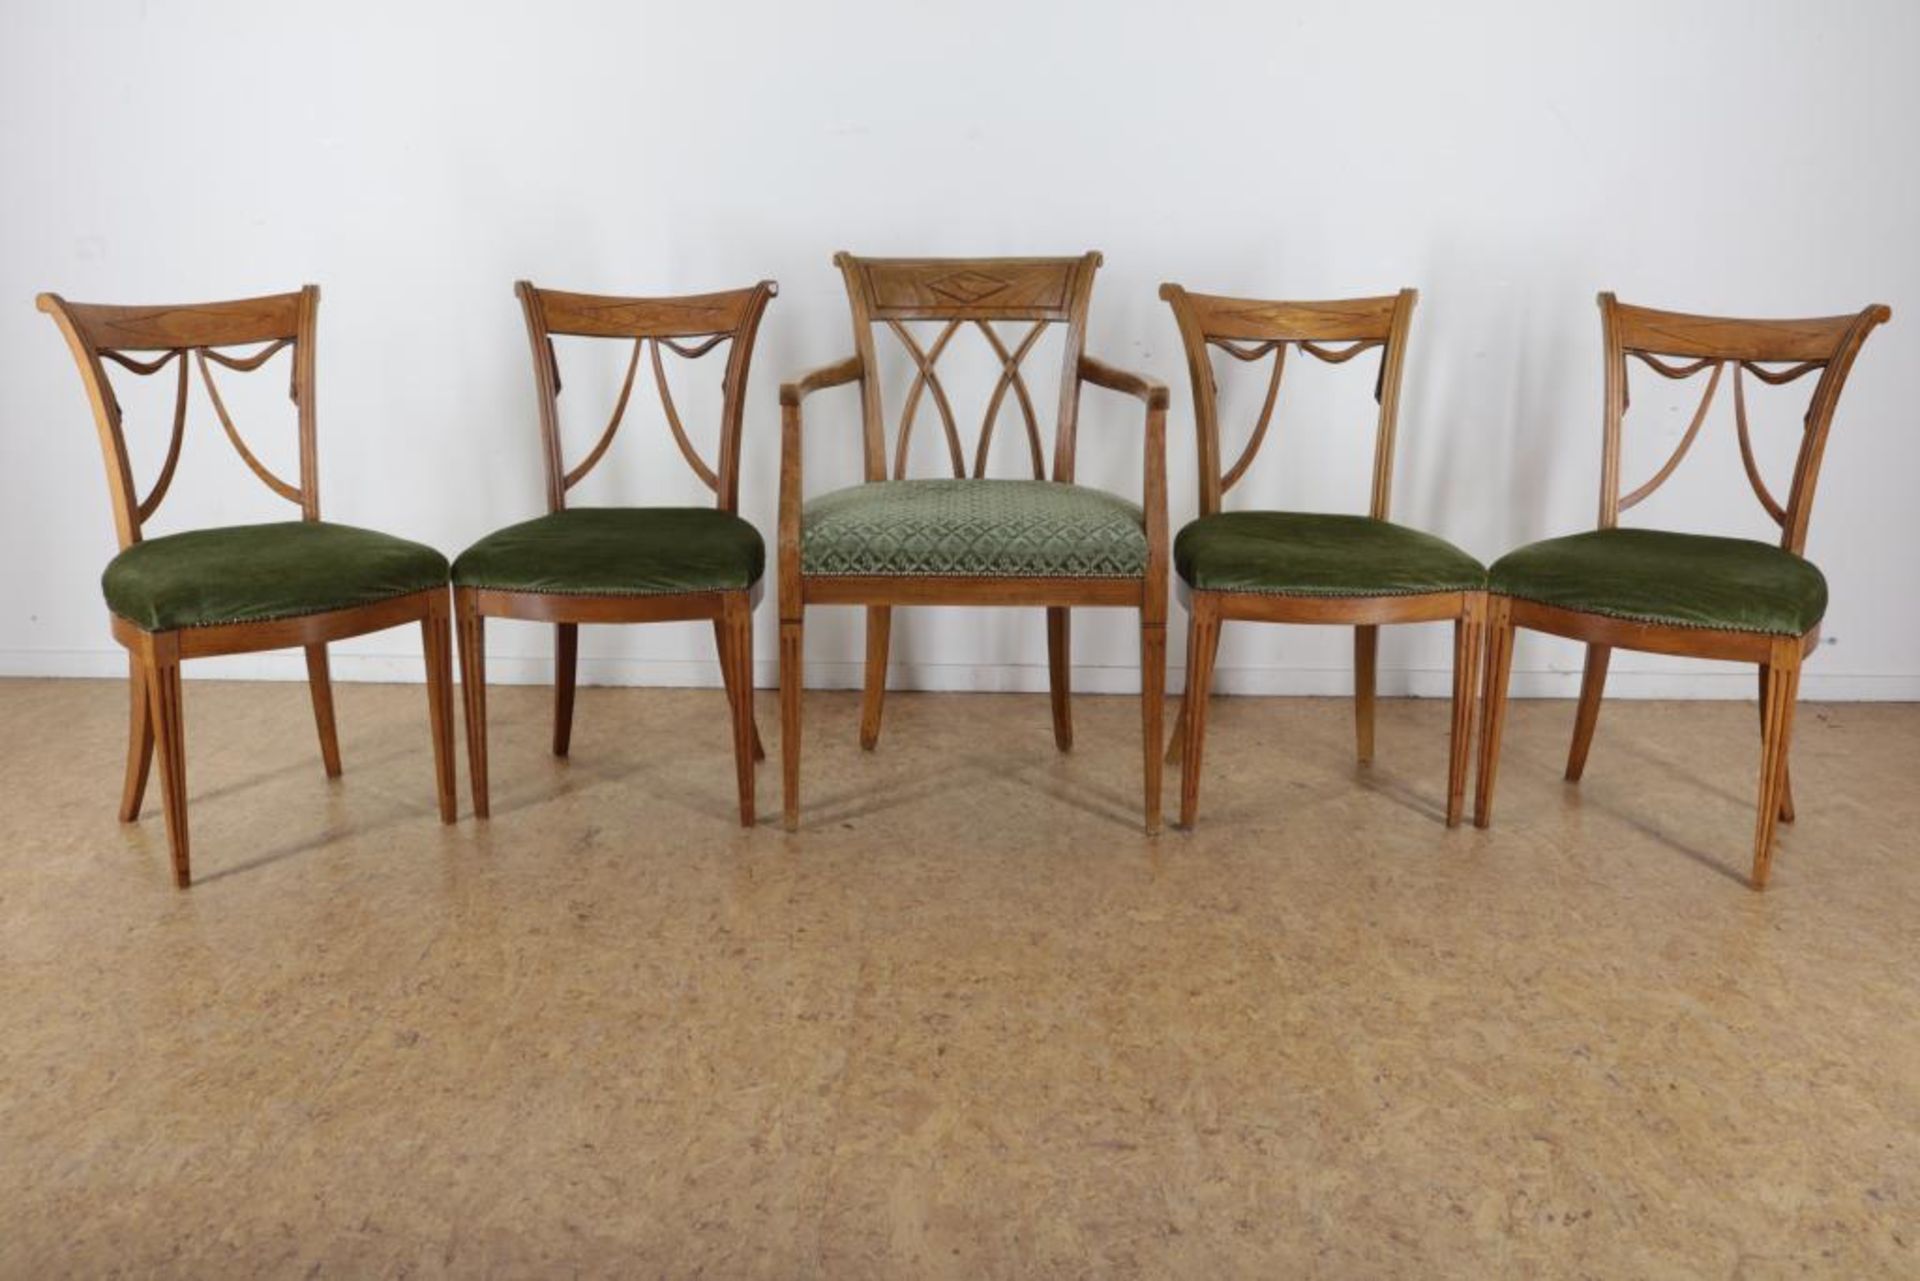 Serie van 5 epenhouten stoelen